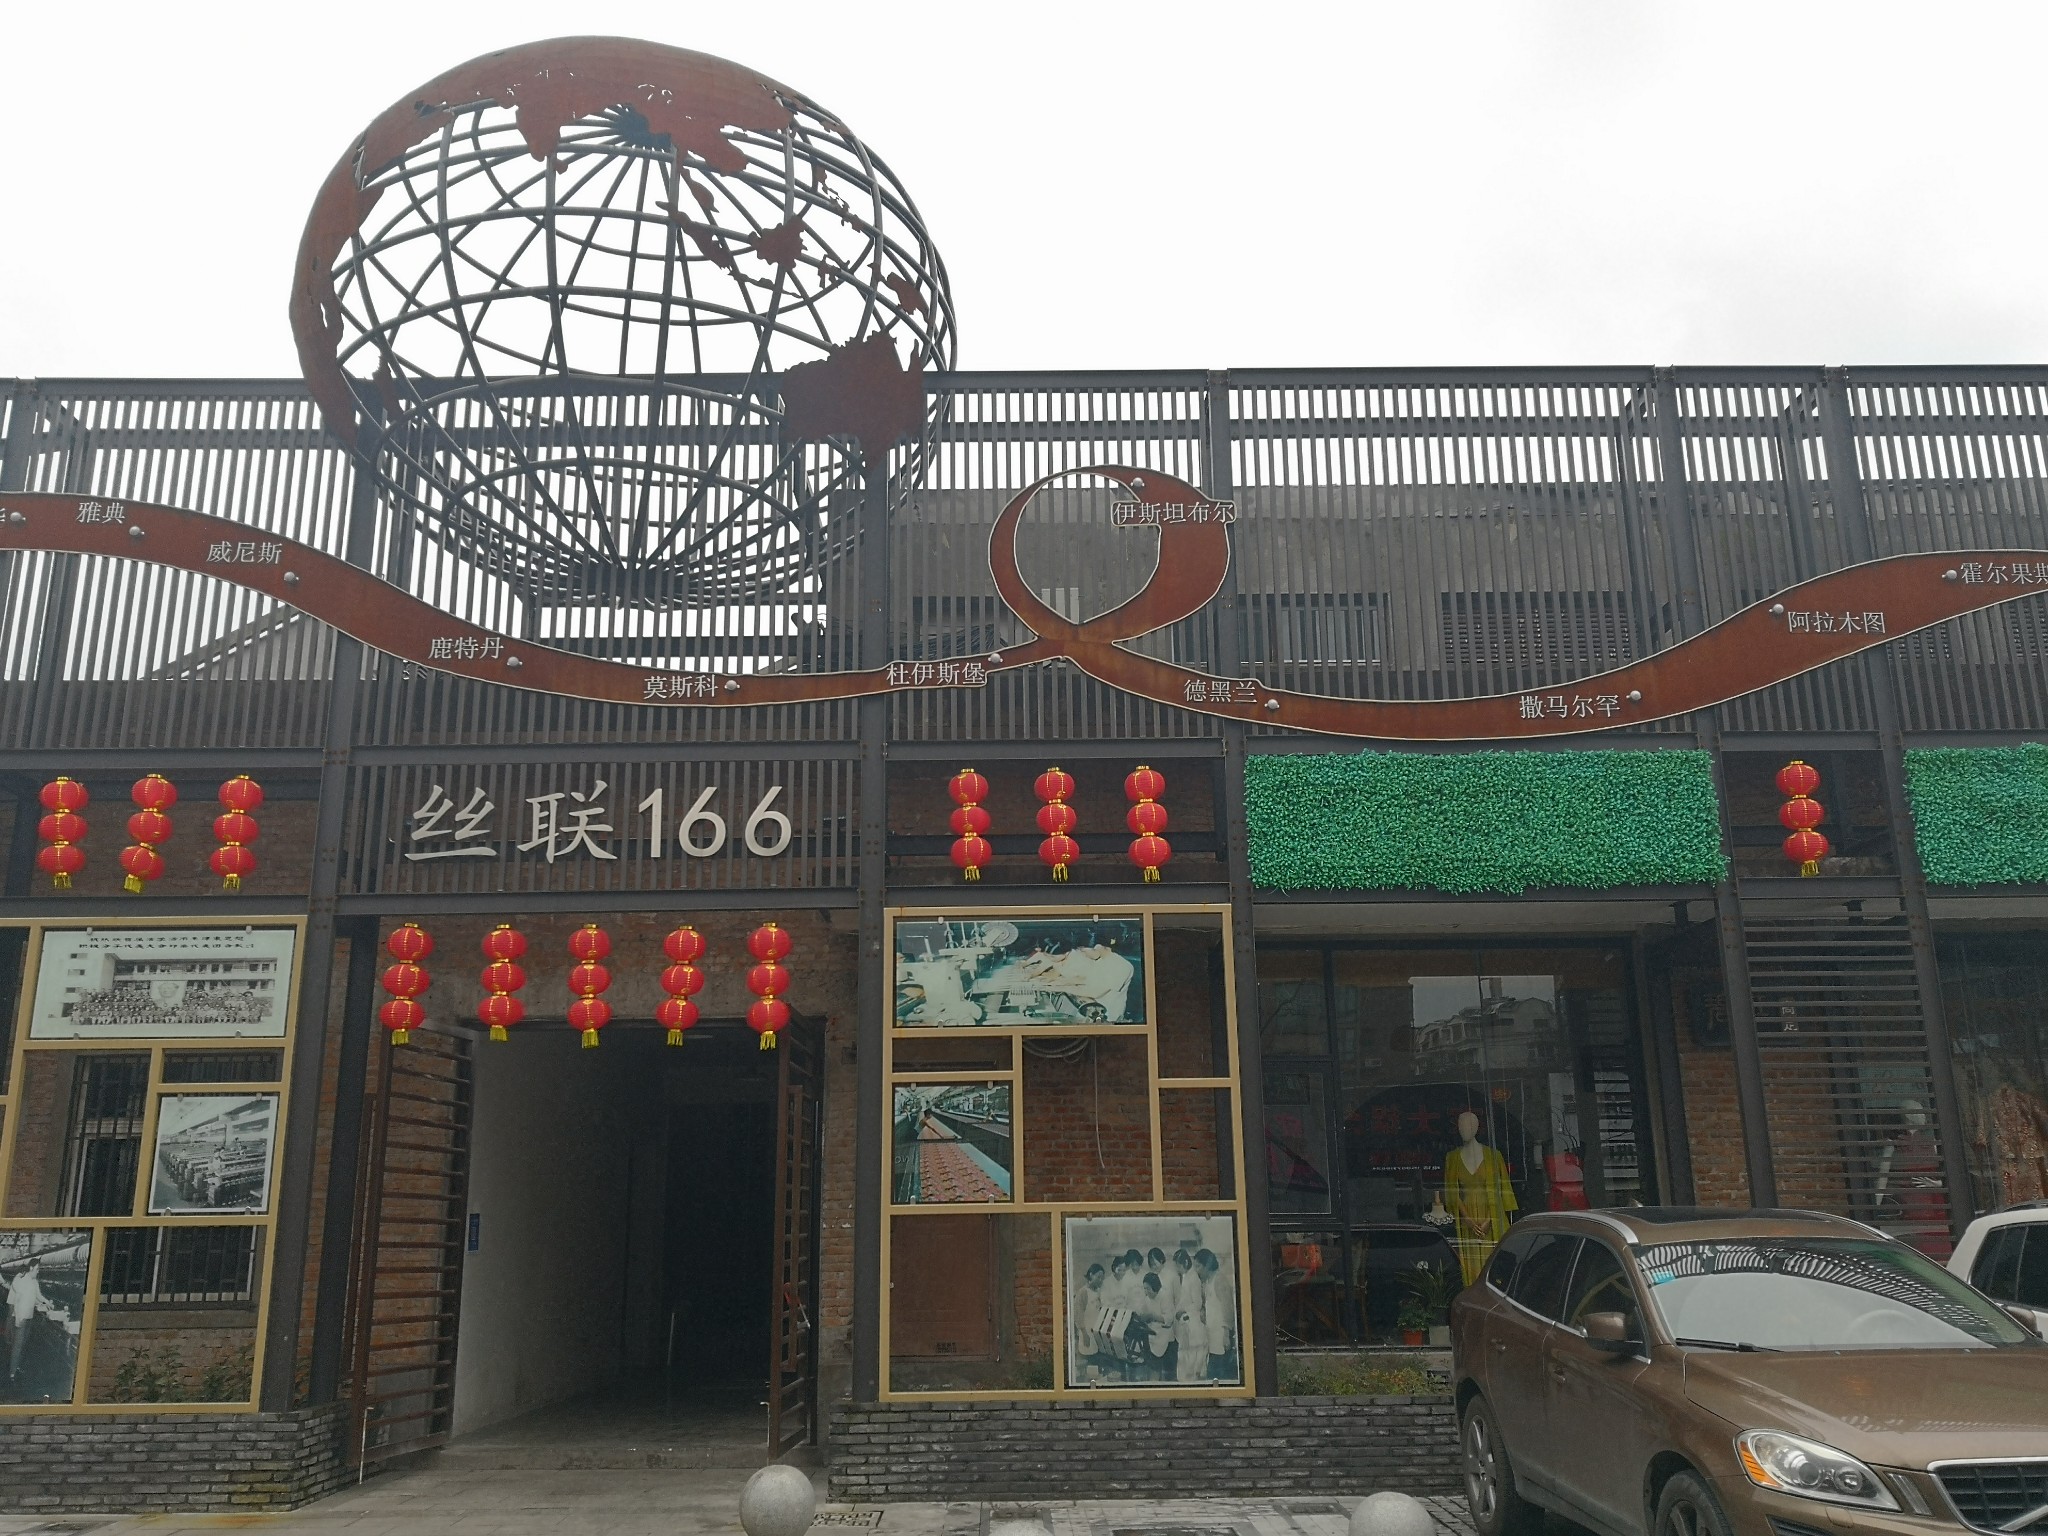 周末,游走在杭州拱宸区金华路,参观"理想·丝联166创意产业园"